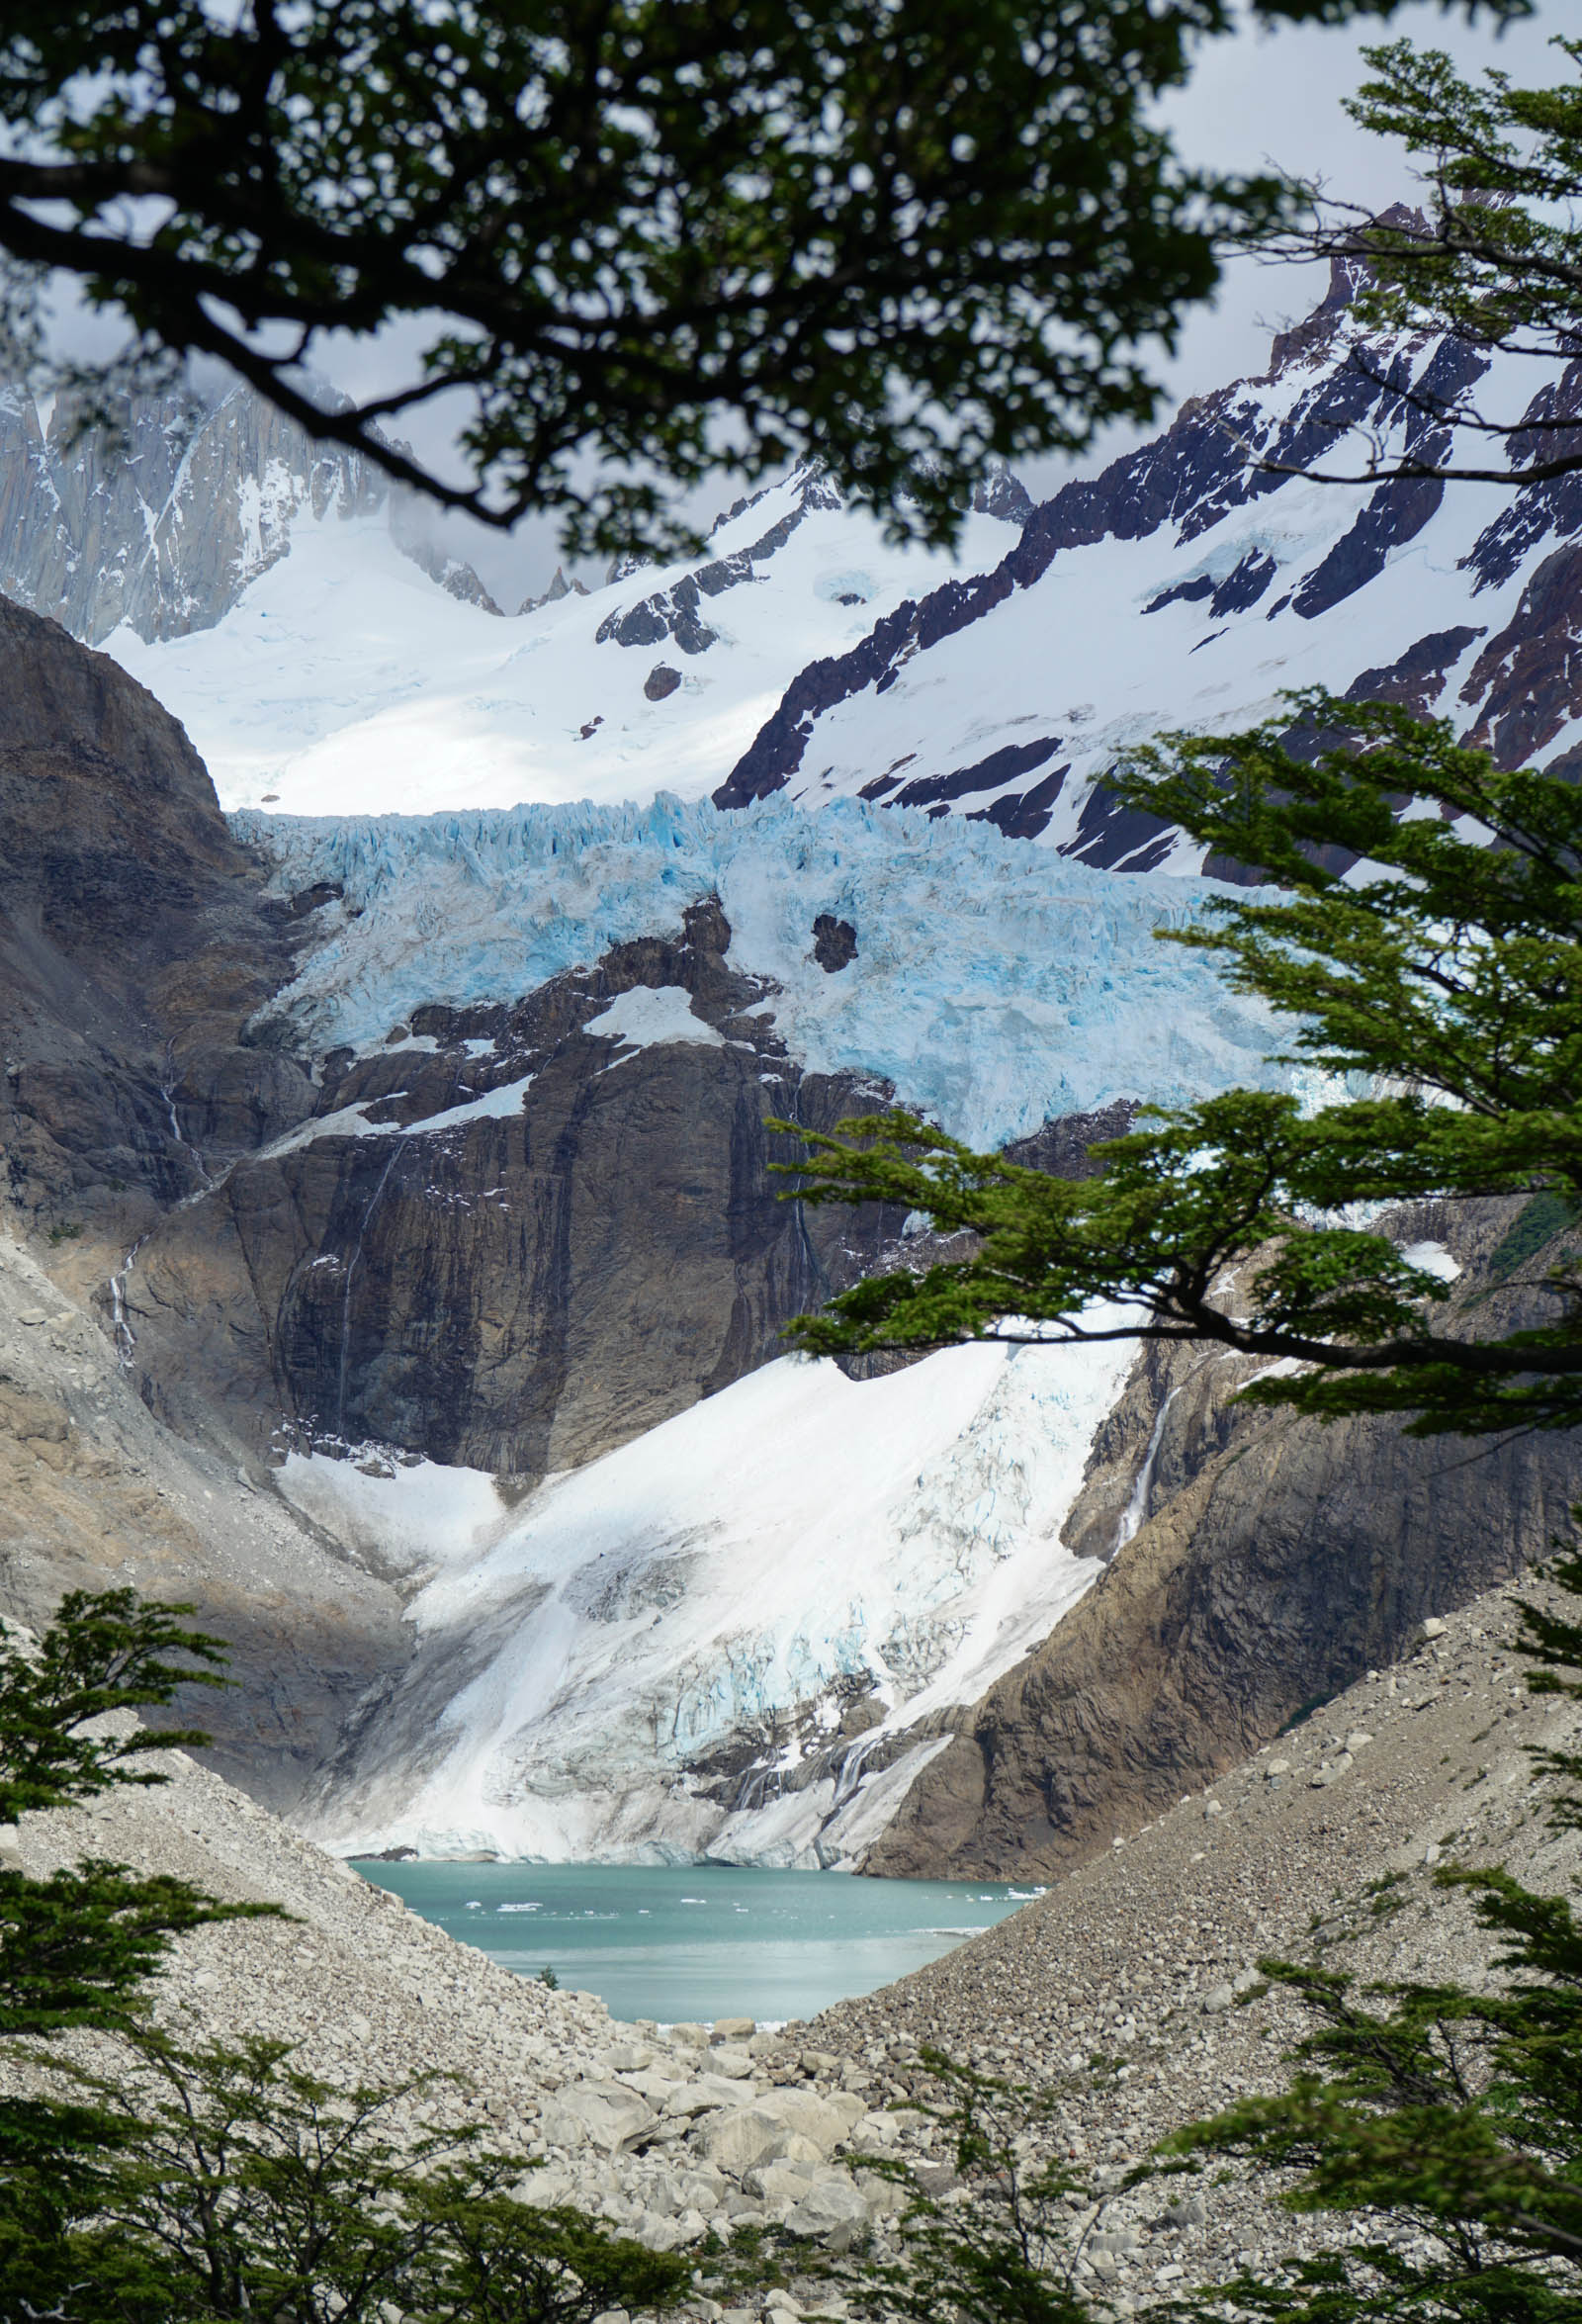 Glacier viewpoint #2